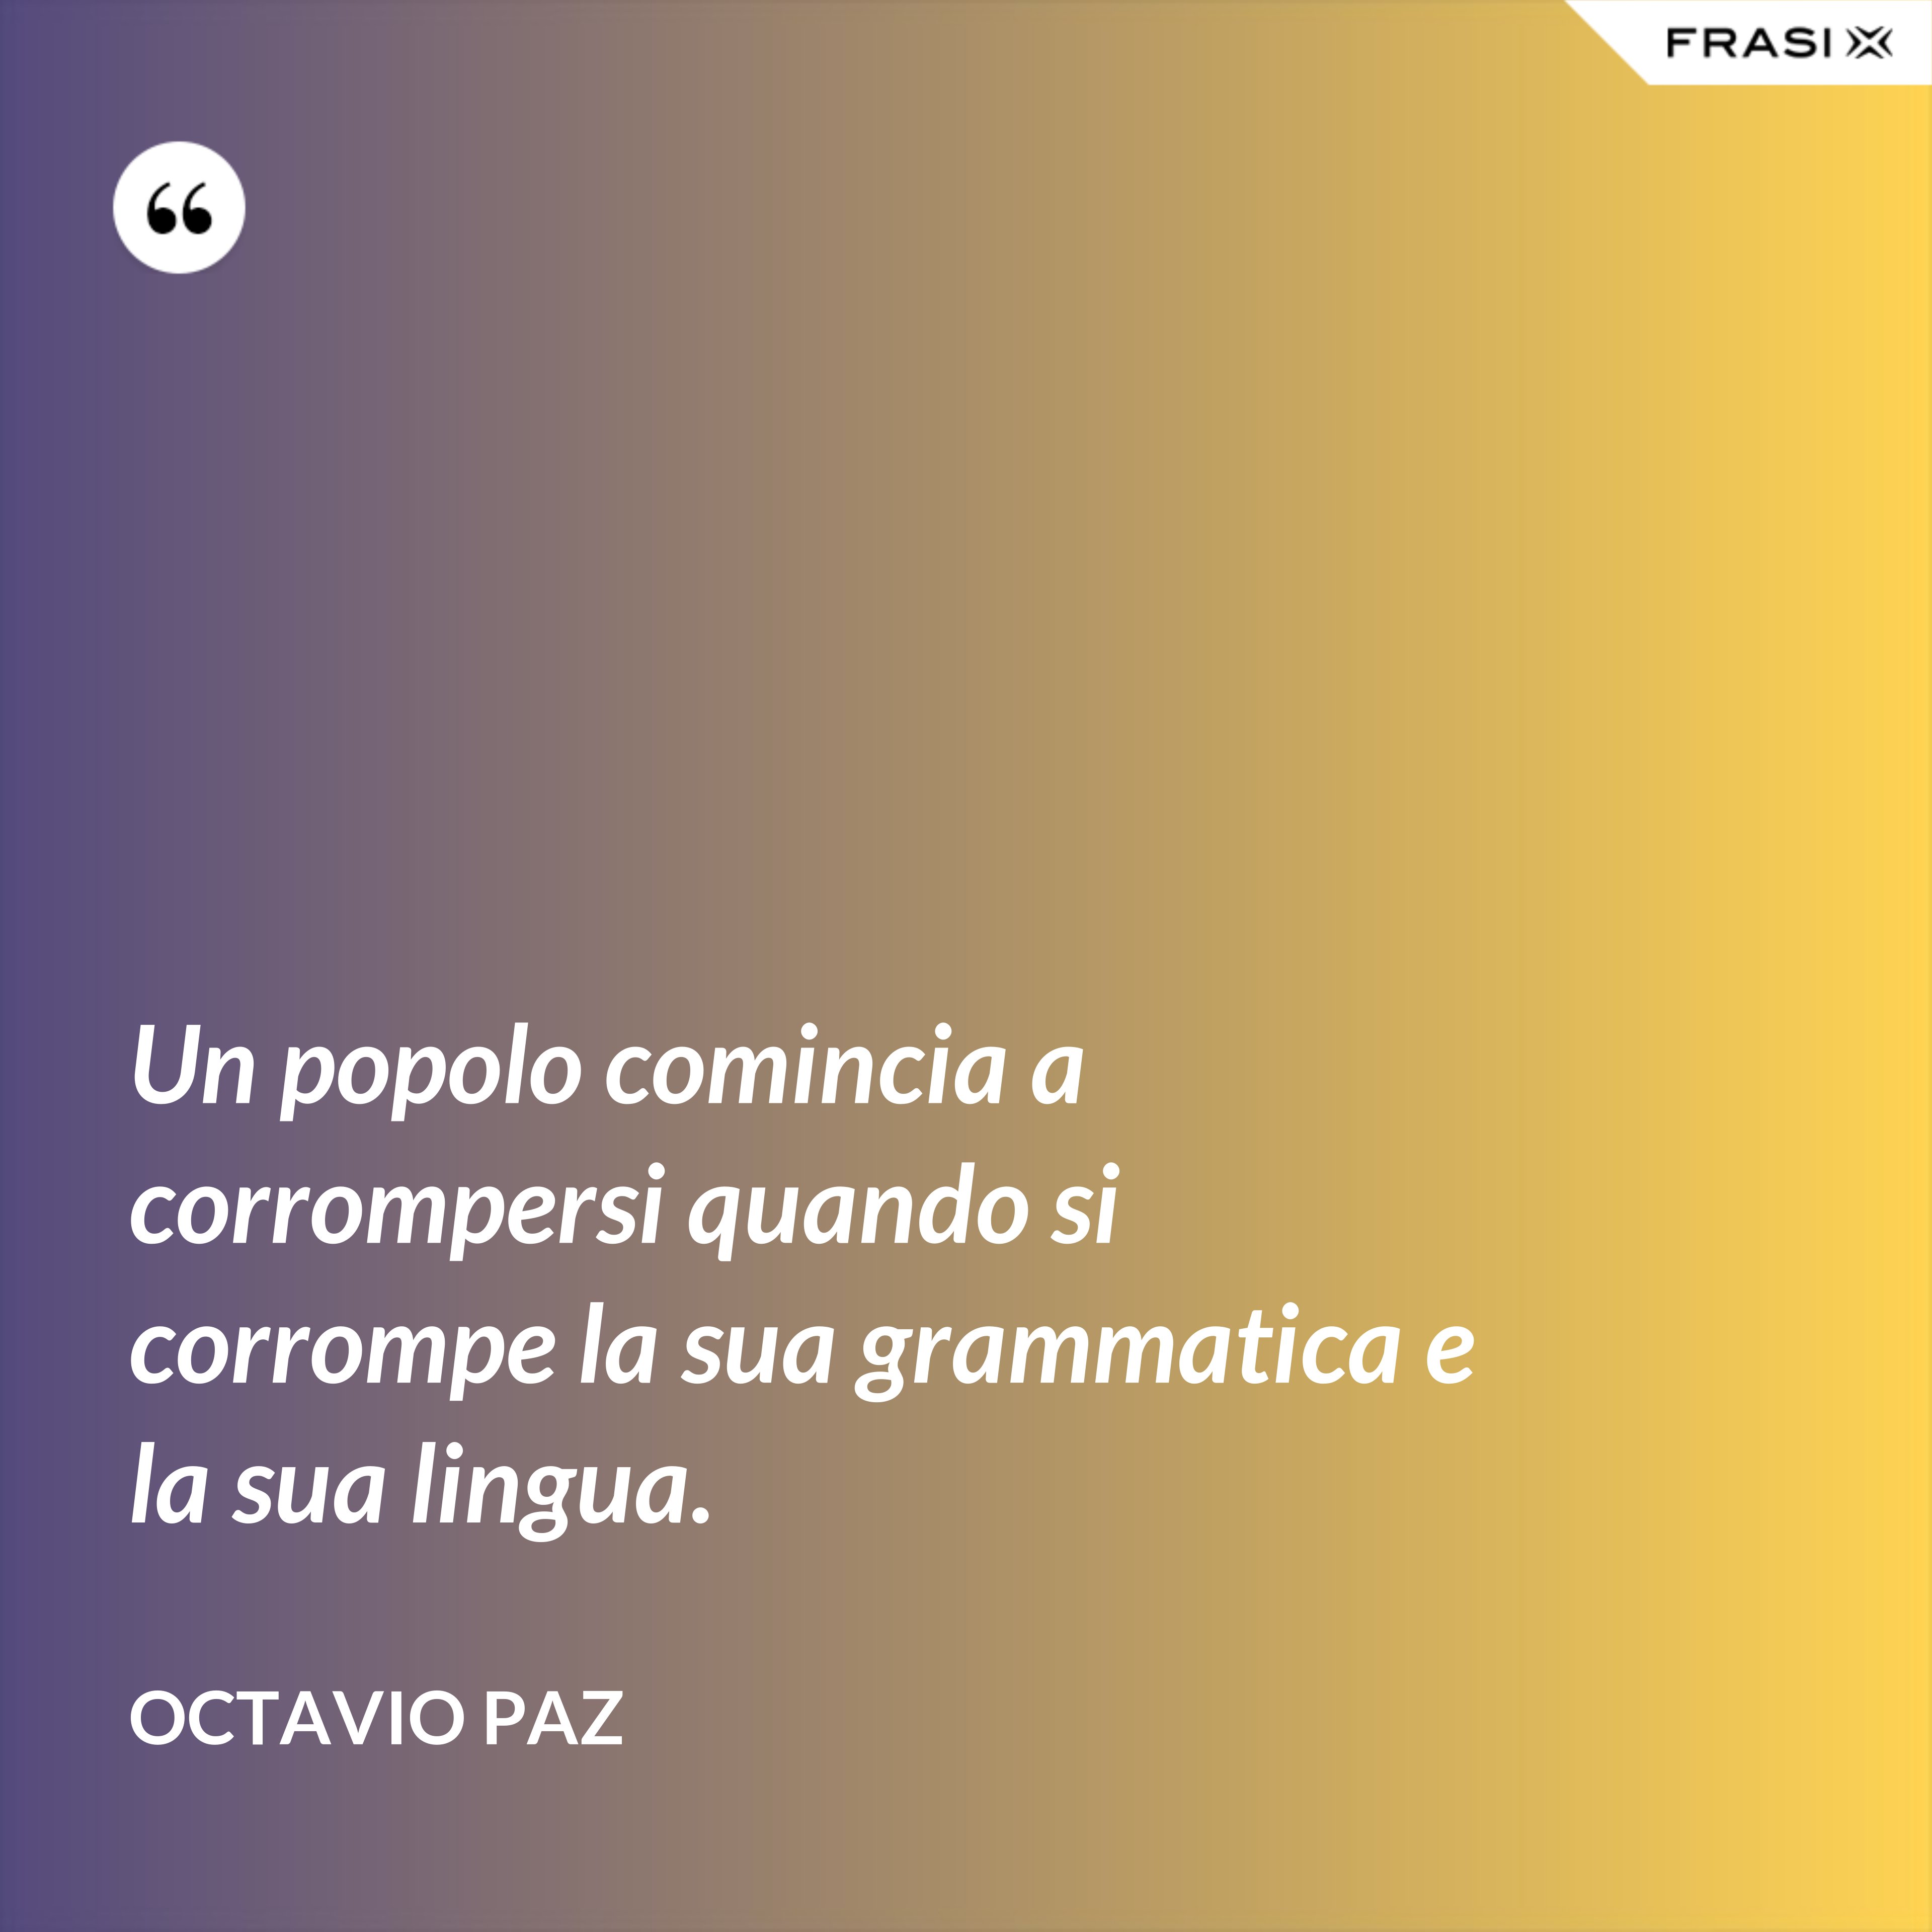 Un popolo comincia a corrompersi quando si corrompe la sua grammatica e la sua lingua. - Octavio Paz